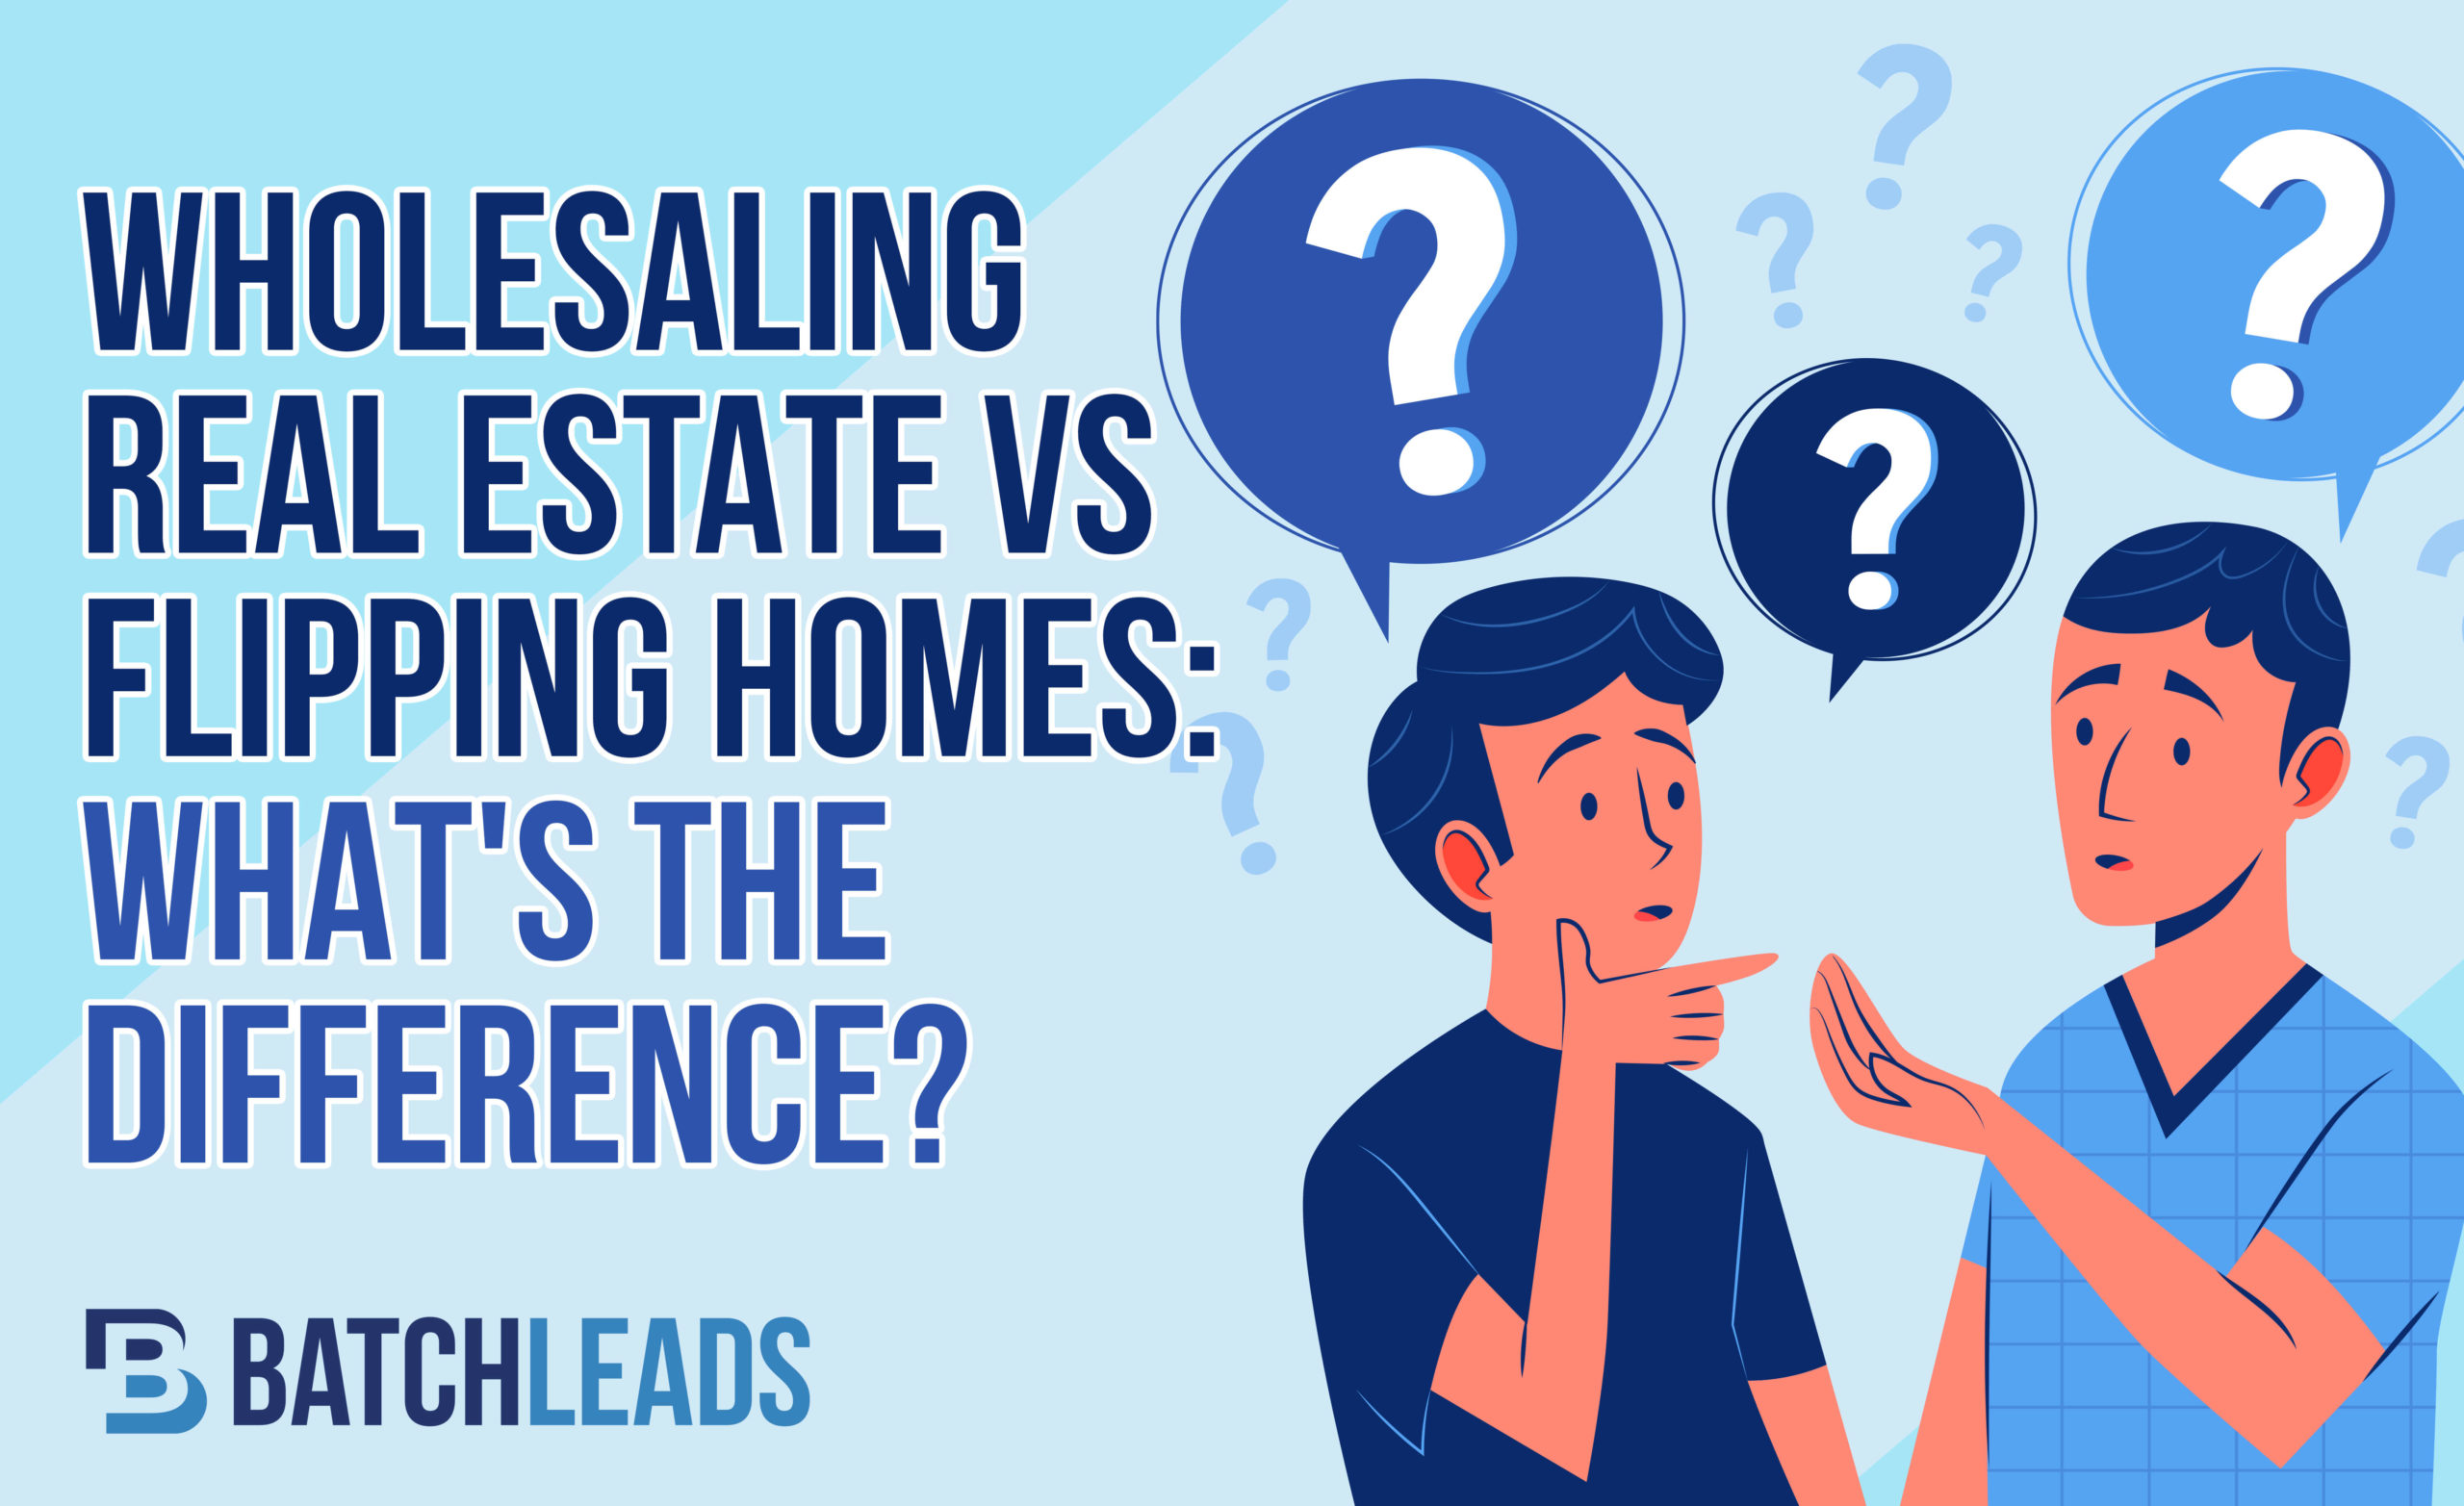 Wholesaling Real Estate vs Flipping Homes